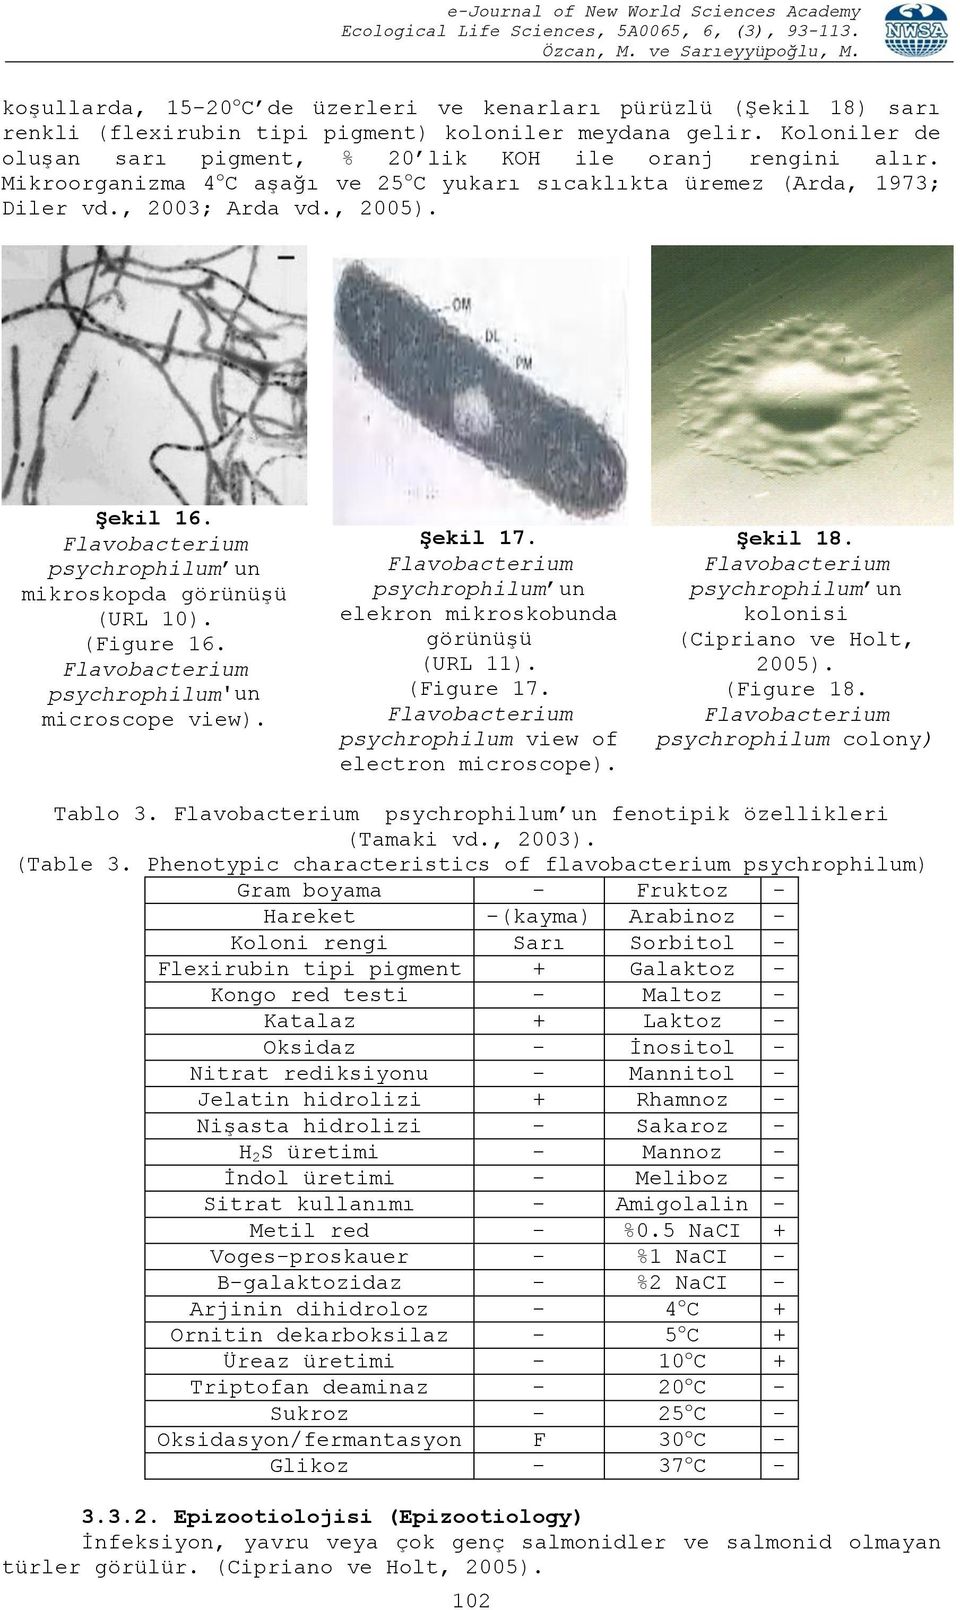 psychrophilum'un microscope view). ġekil 17. psychrophilum un elekron mikroskobunda görünüģü (URL 11). (Figure 17. psychrophilum view of electron microscope). ġekil 18.